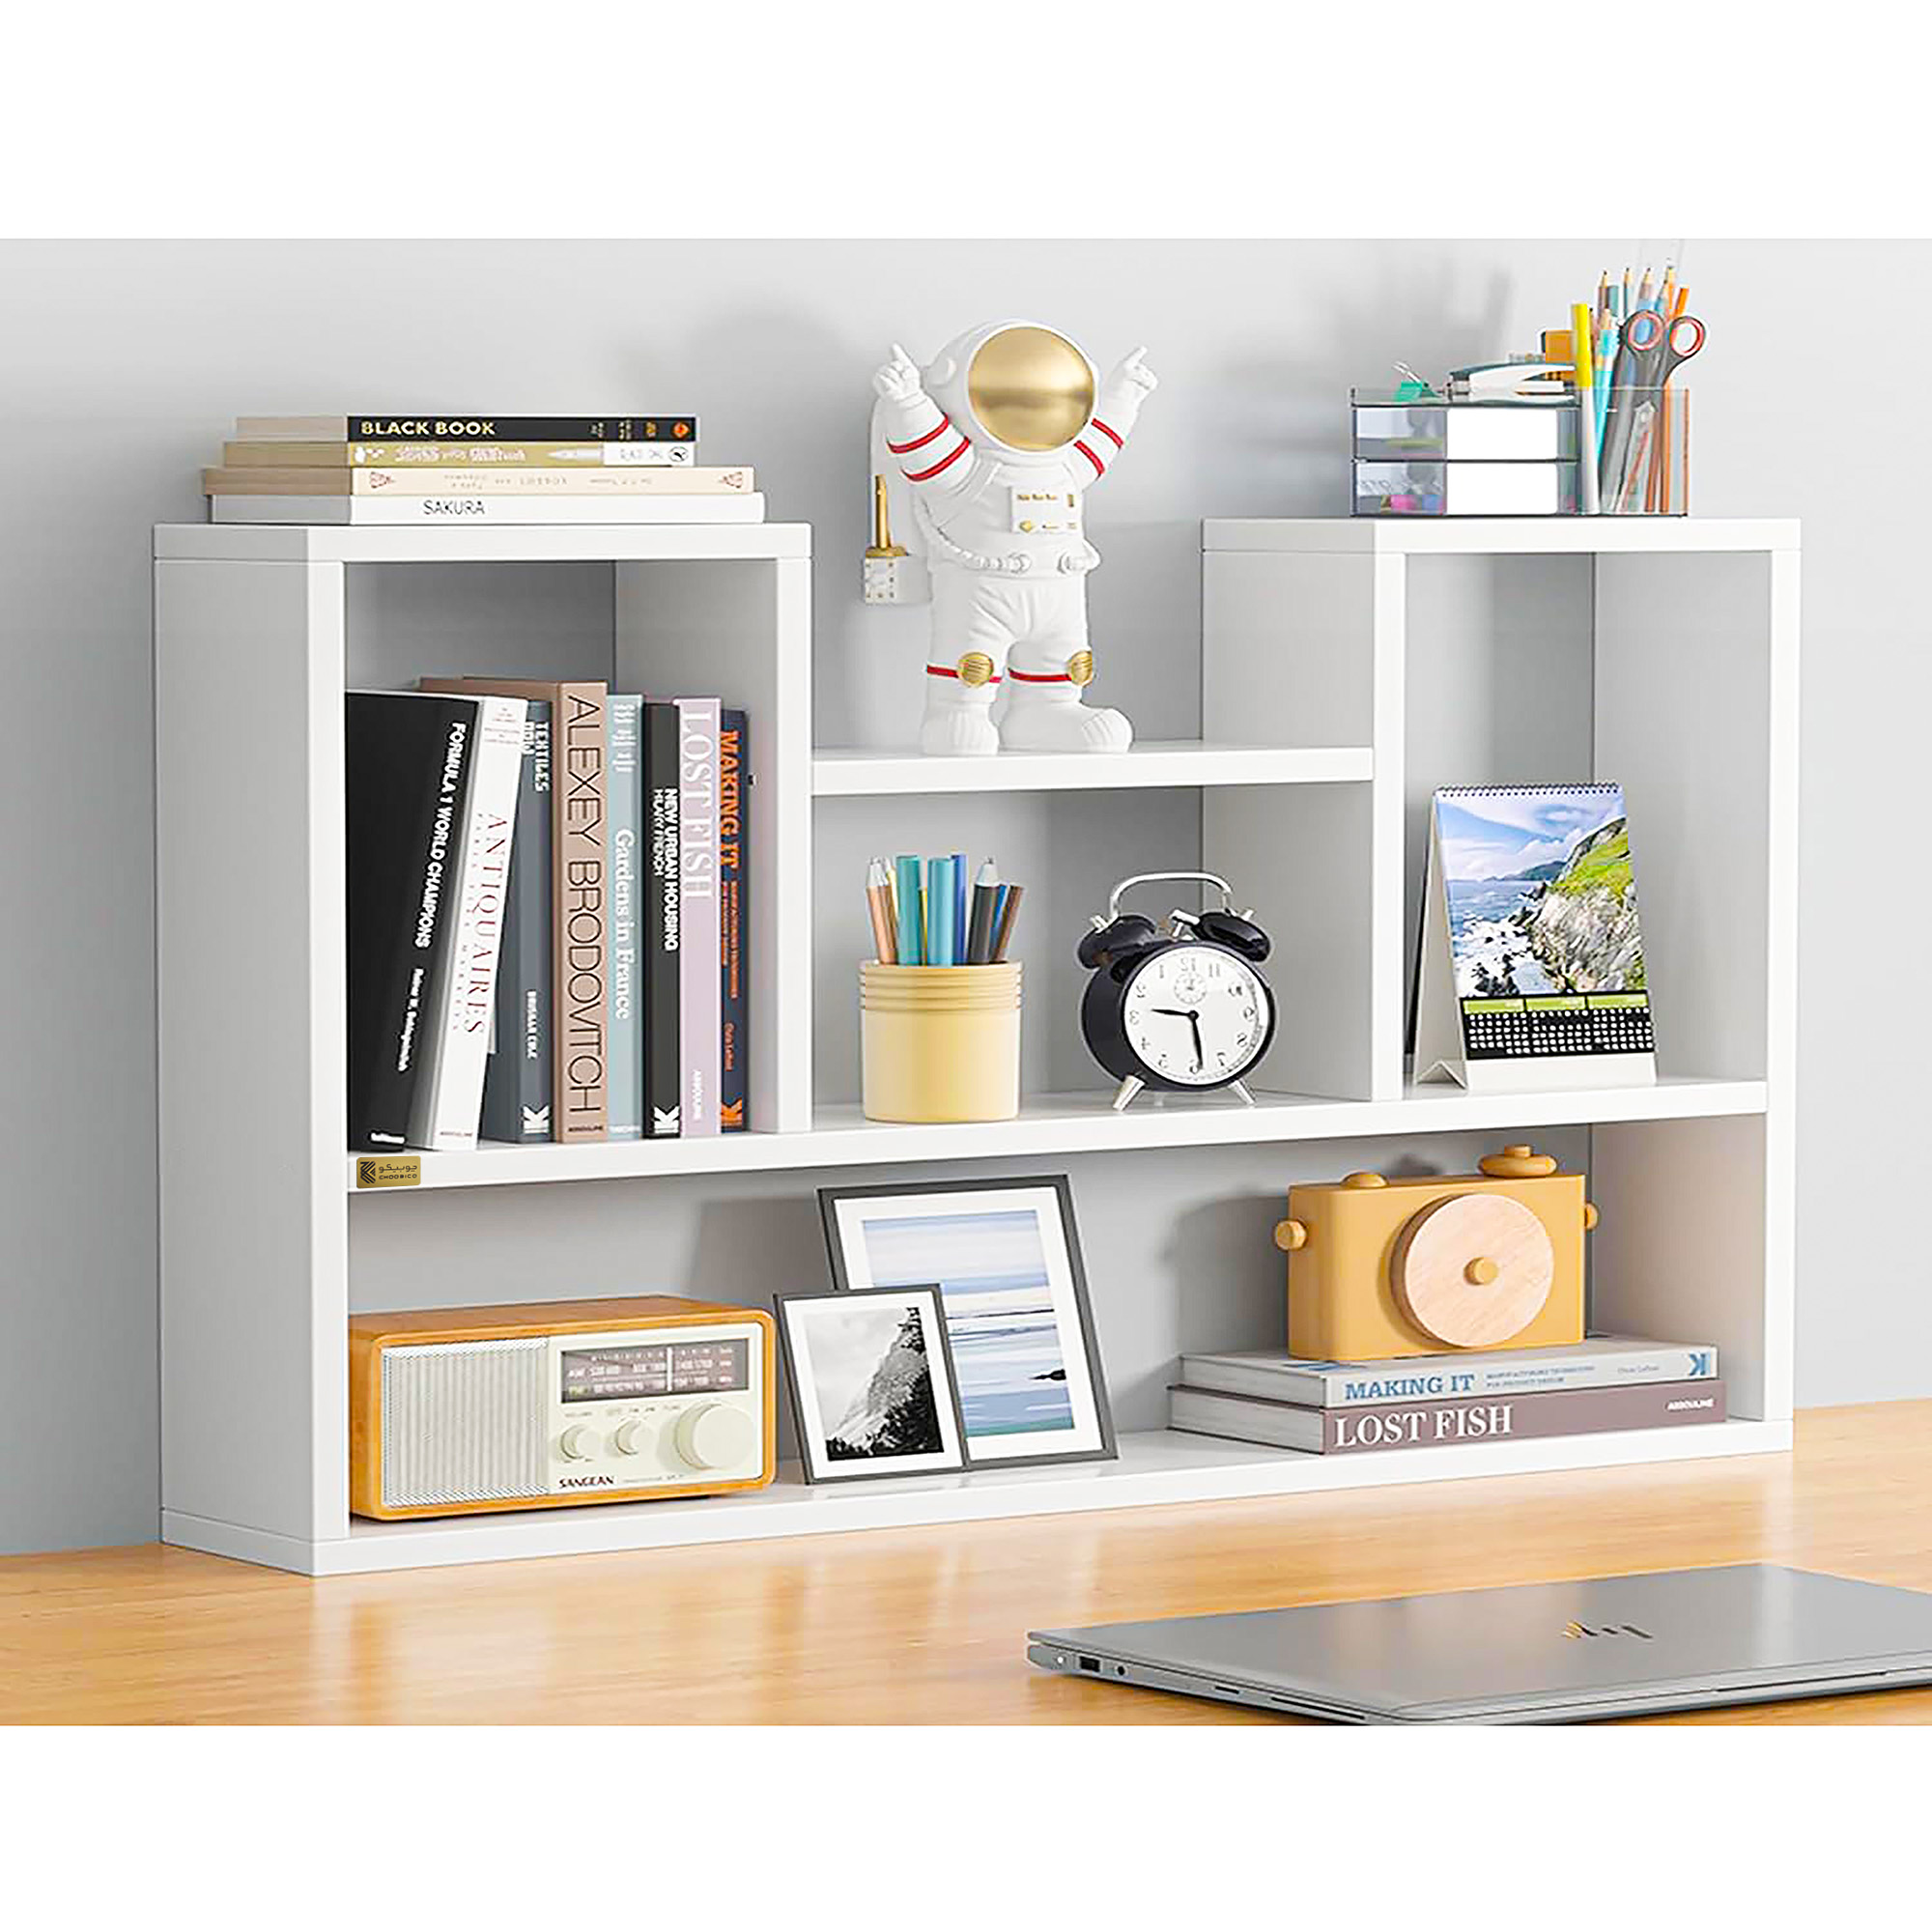 کتابخانه رومیزی چوبیکو مدل bookshelf400